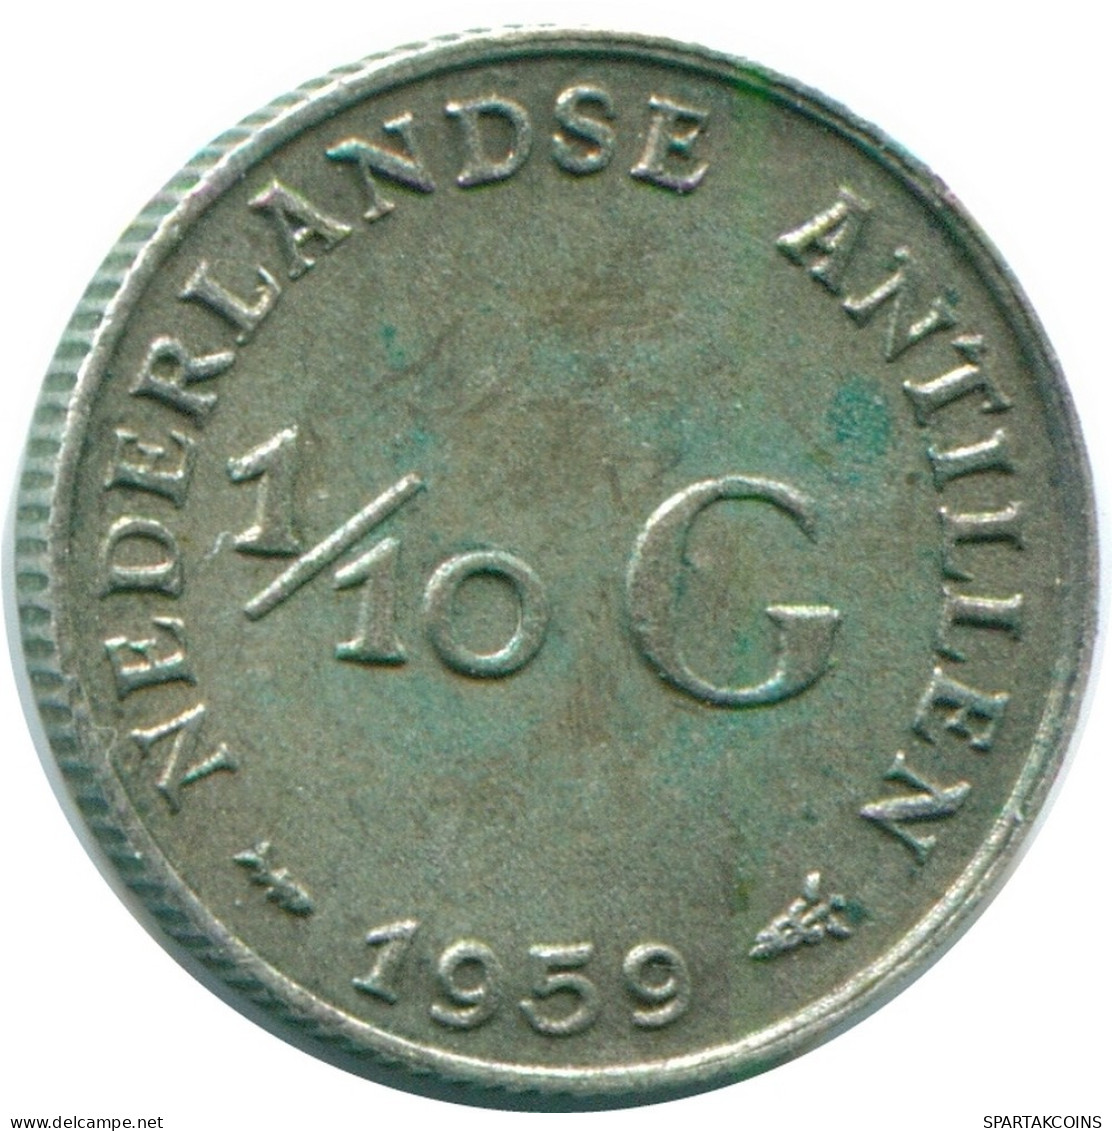 1/10 GULDEN 1959 NIEDERLÄNDISCHE ANTILLEN SILBER Koloniale Münze #NL12214.3.D.A - Niederländische Antillen